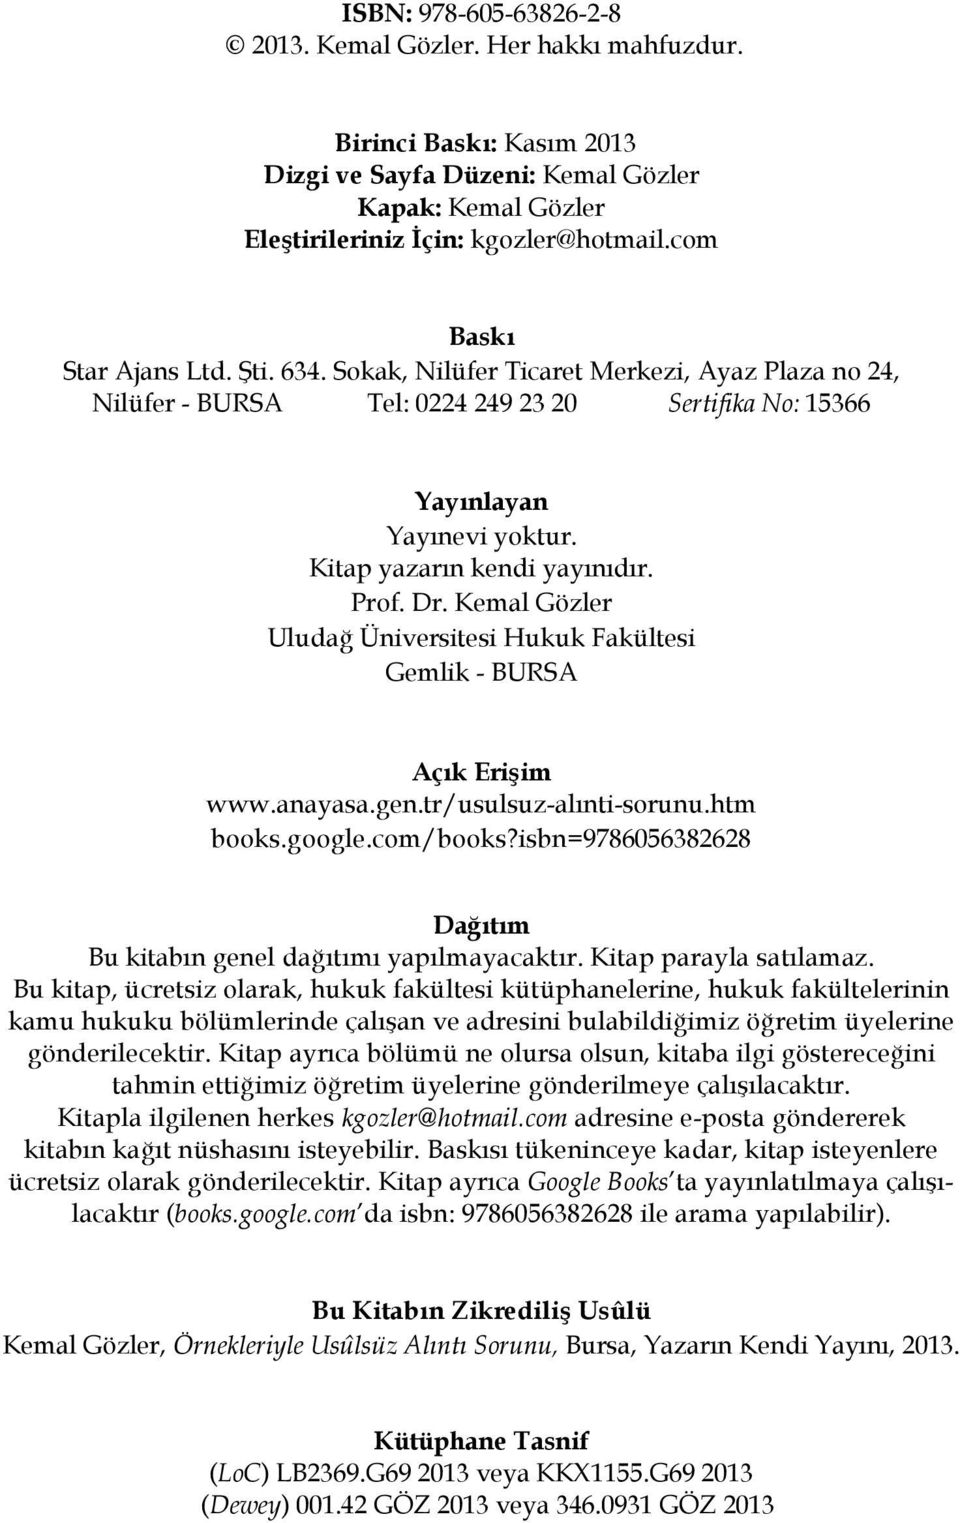 Prof. Dr. Kemal Gözler Uludağ Üniversitesi Hukuk Fakültesi Gemlik - BURSA Açık Erişim www.anayasa.gen.tr/usulsuz-alınti-sorunu.htm books.google.com/books?